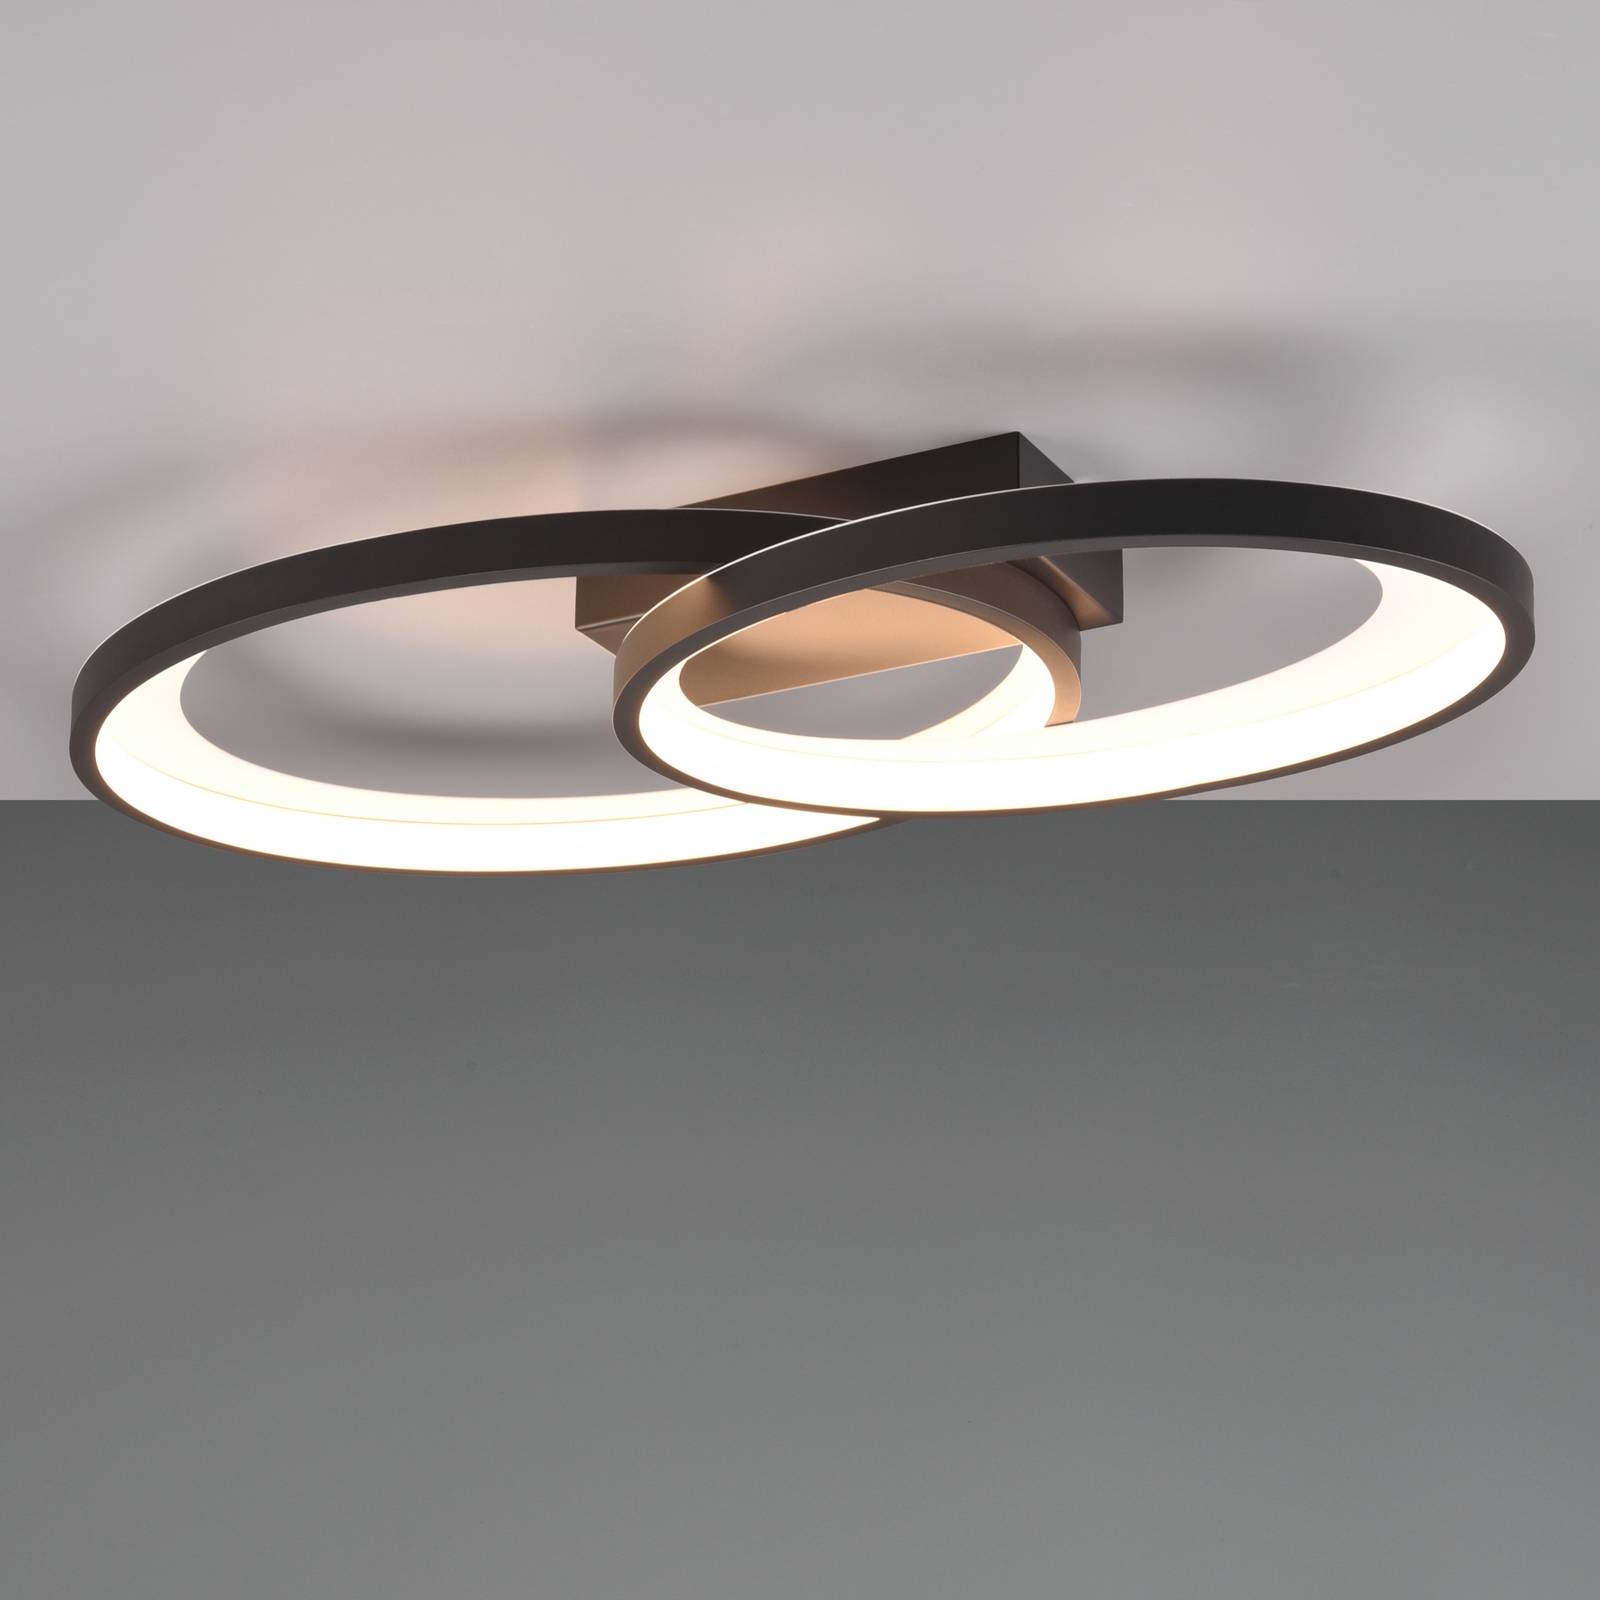 LED-Deckenleuchte Malaga mit 2 Ringen, schwarz